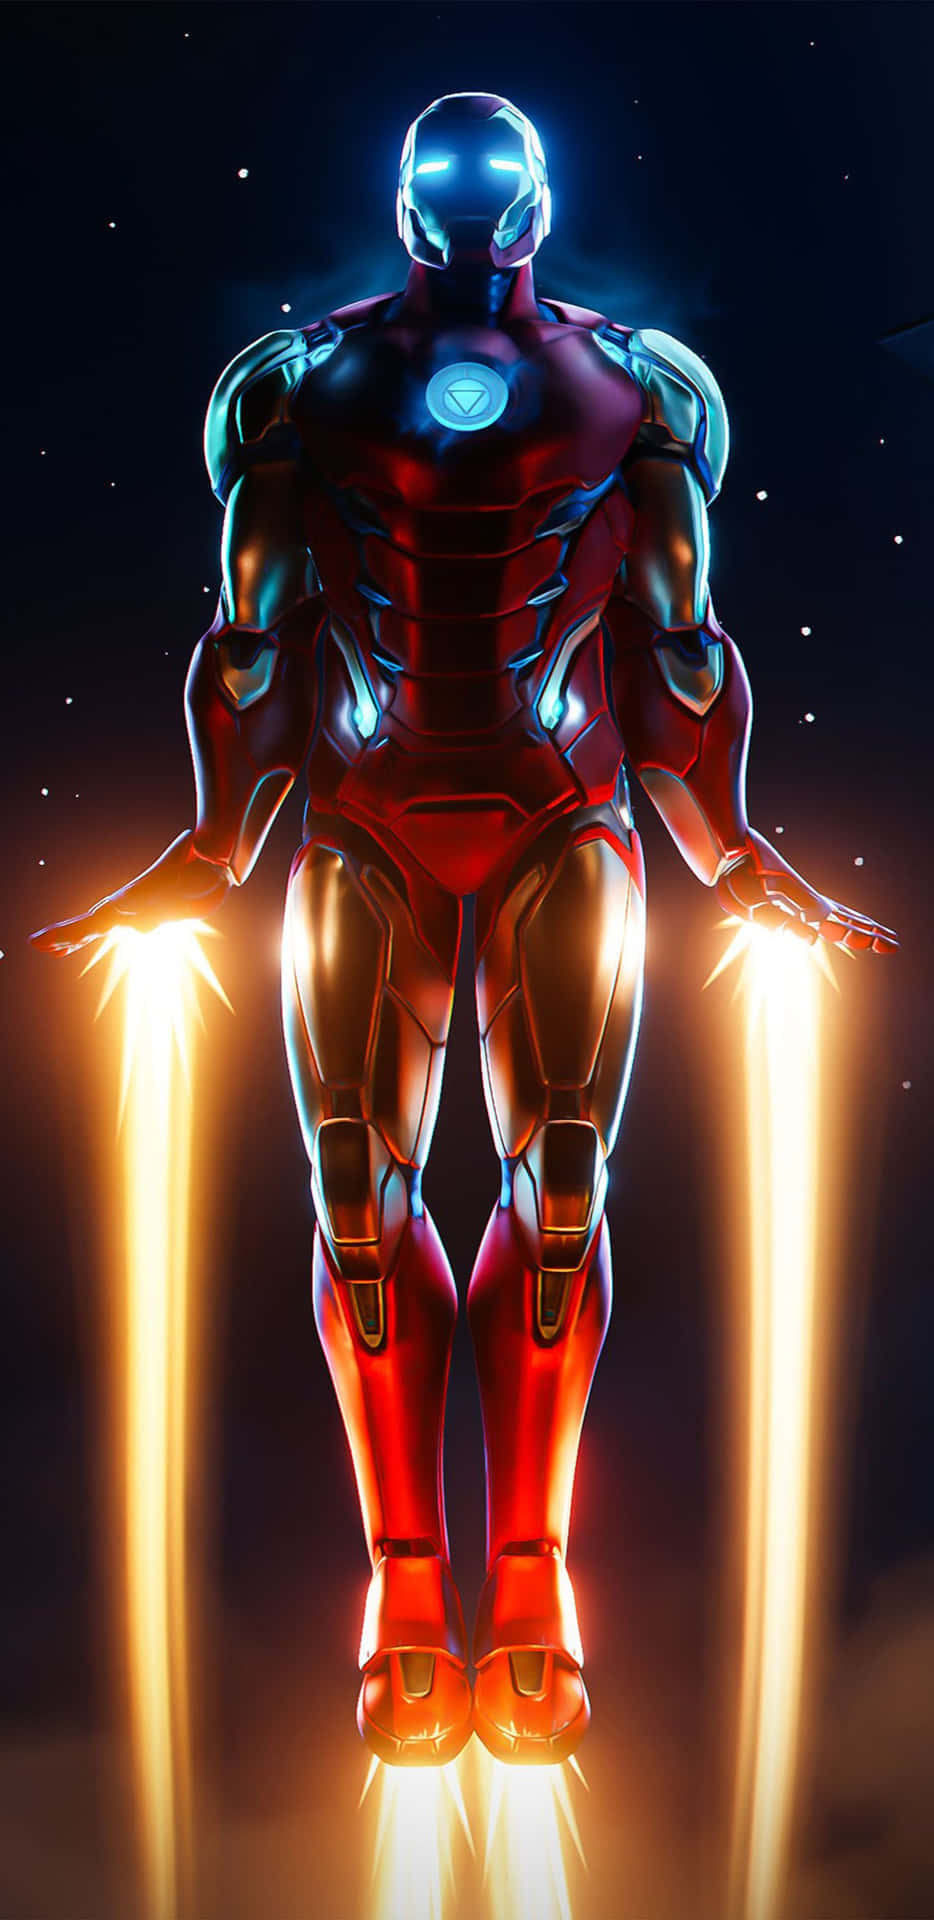 Fondode Pantalla De Los Botines A Reacción De Iron Man Para El Pixel 3xl.